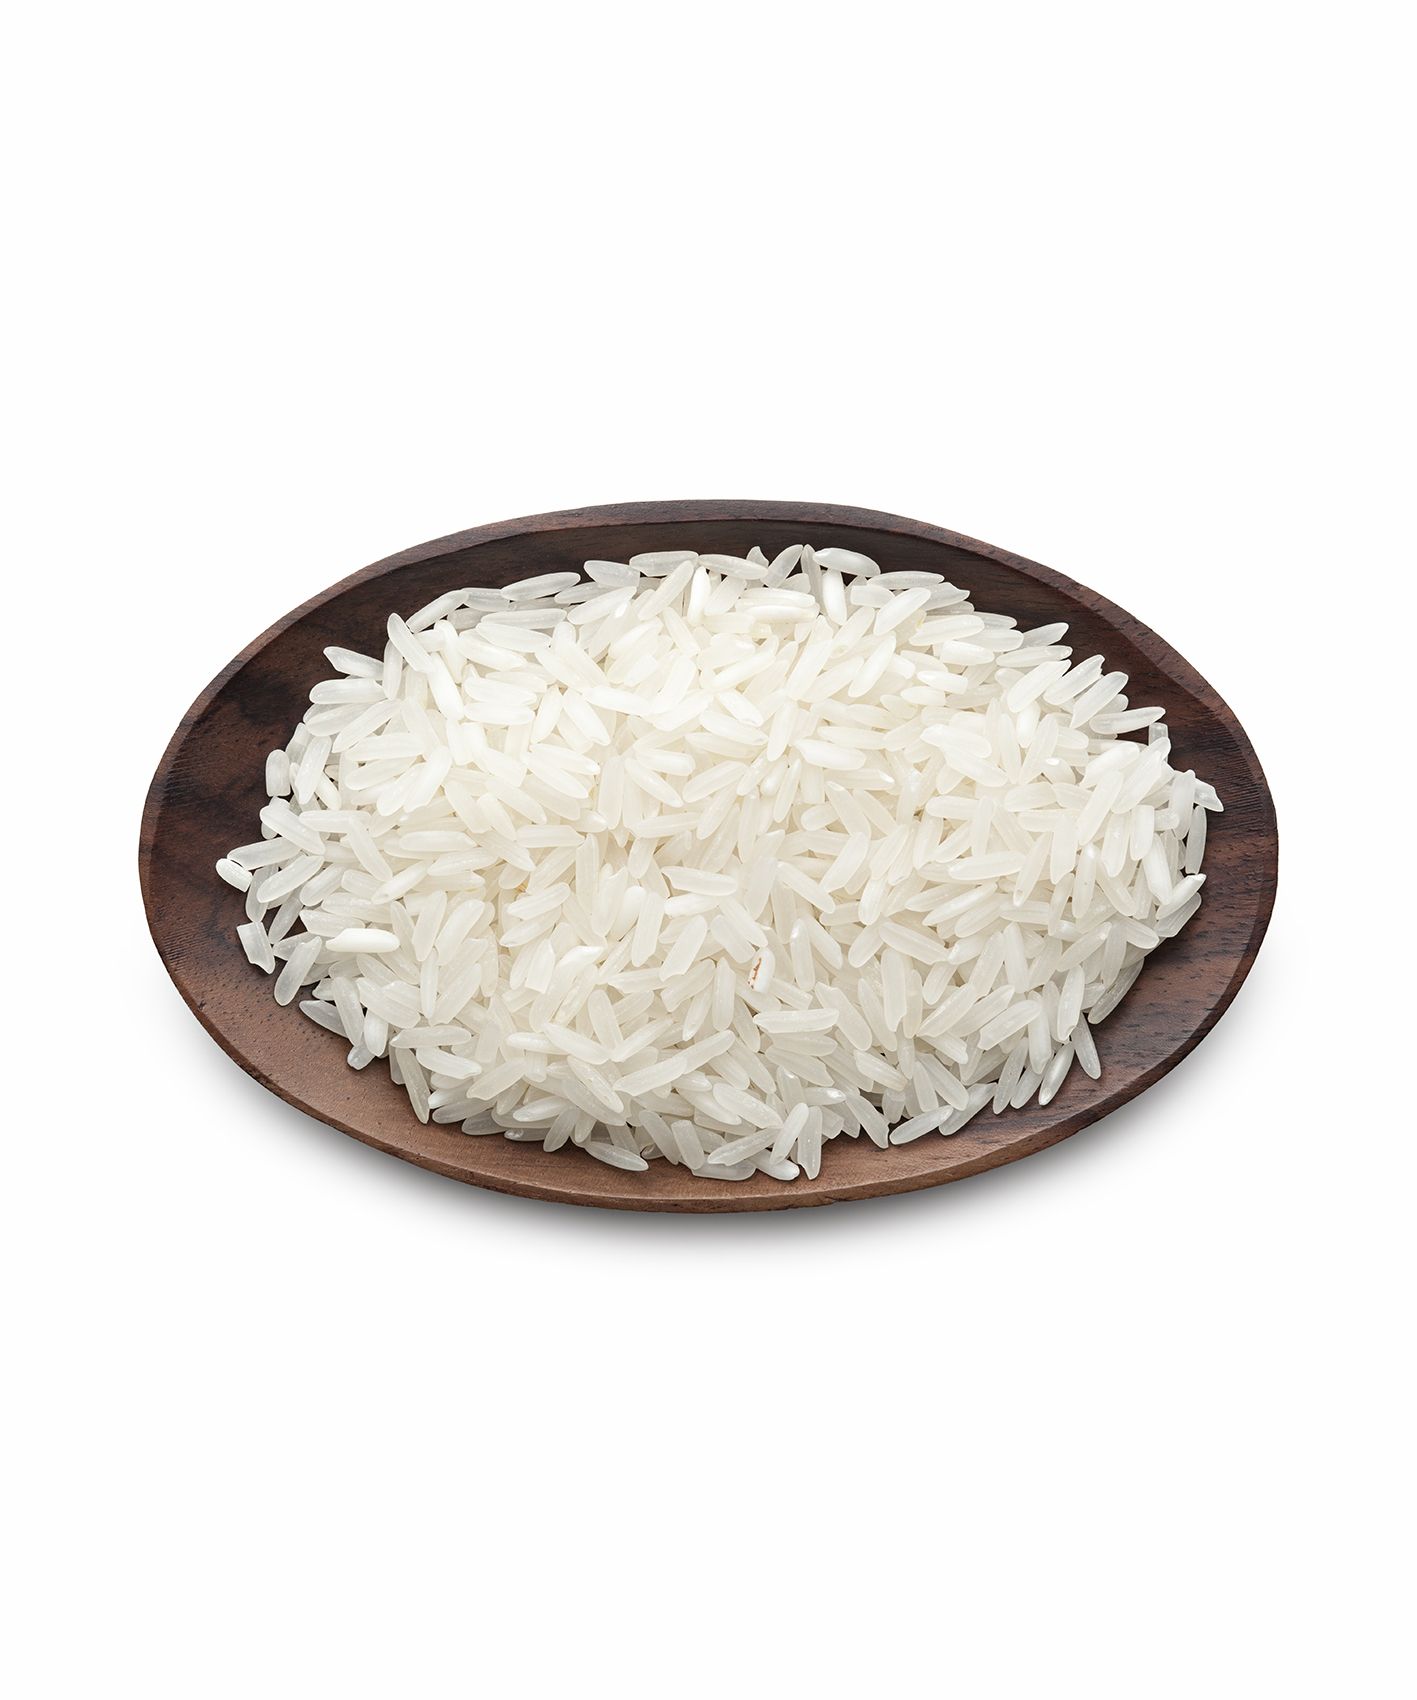 Valkoinen riisi kulhossa